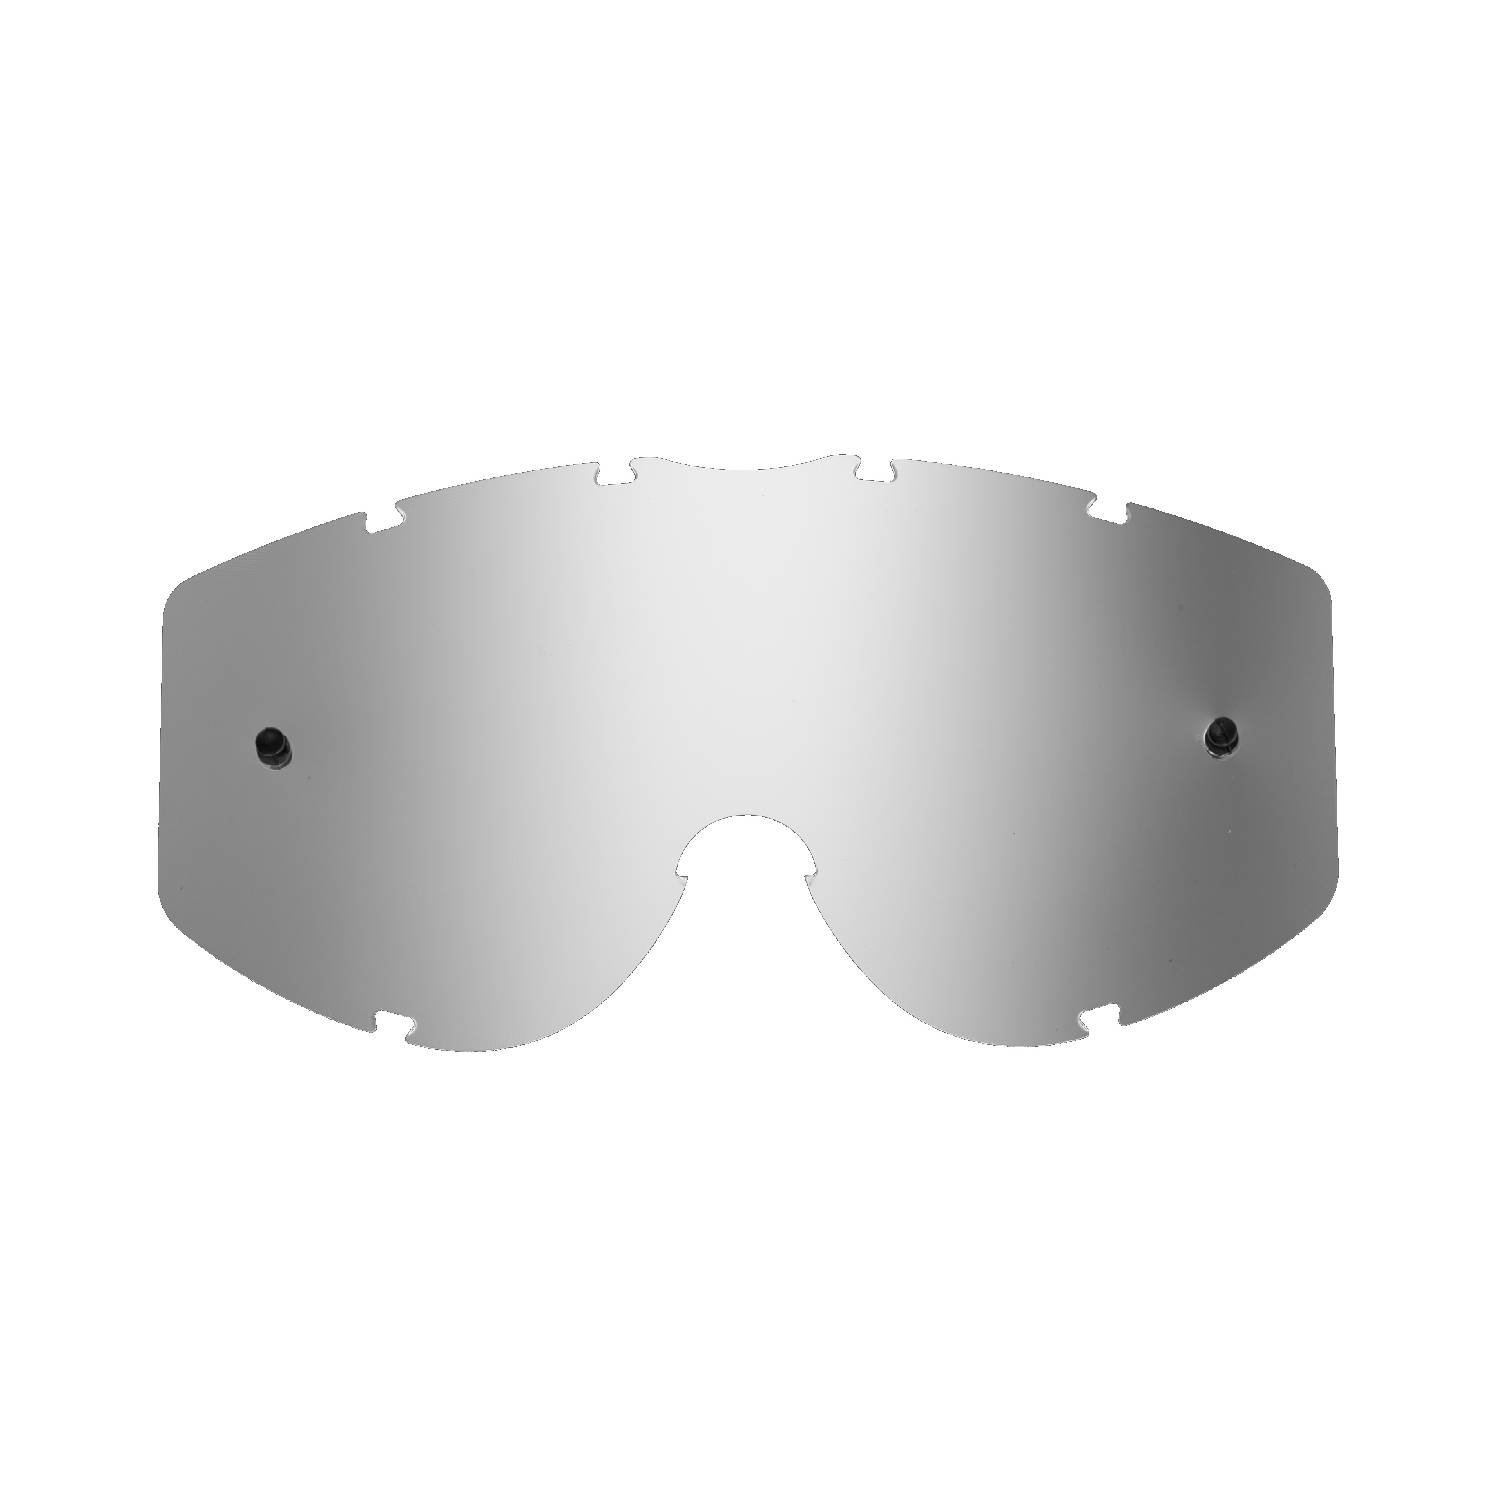 Lente di ricambio argento specchiato compatibile per occhiale/maschera Progrip 3200 / 3450 / 3400  / 3201 / 3204 / 3301